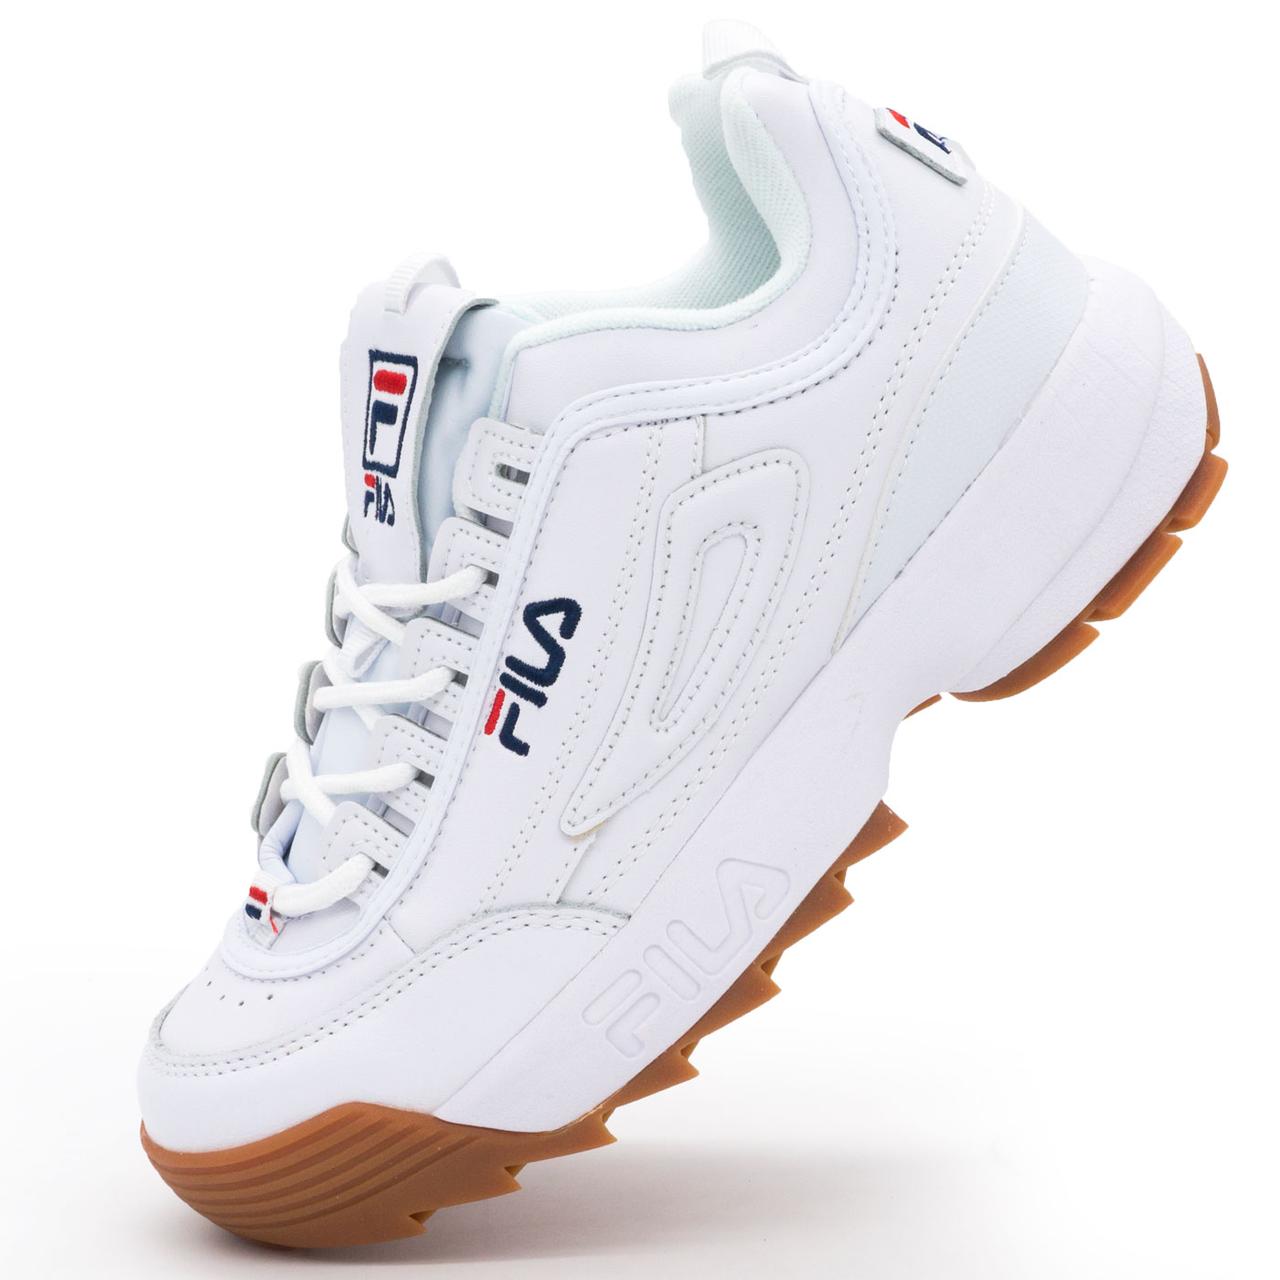 Жіночі кросівки білі з коричневою підошвою FILA Disruptor 2. Топ якість! 38. Розміри в наявності: 38.